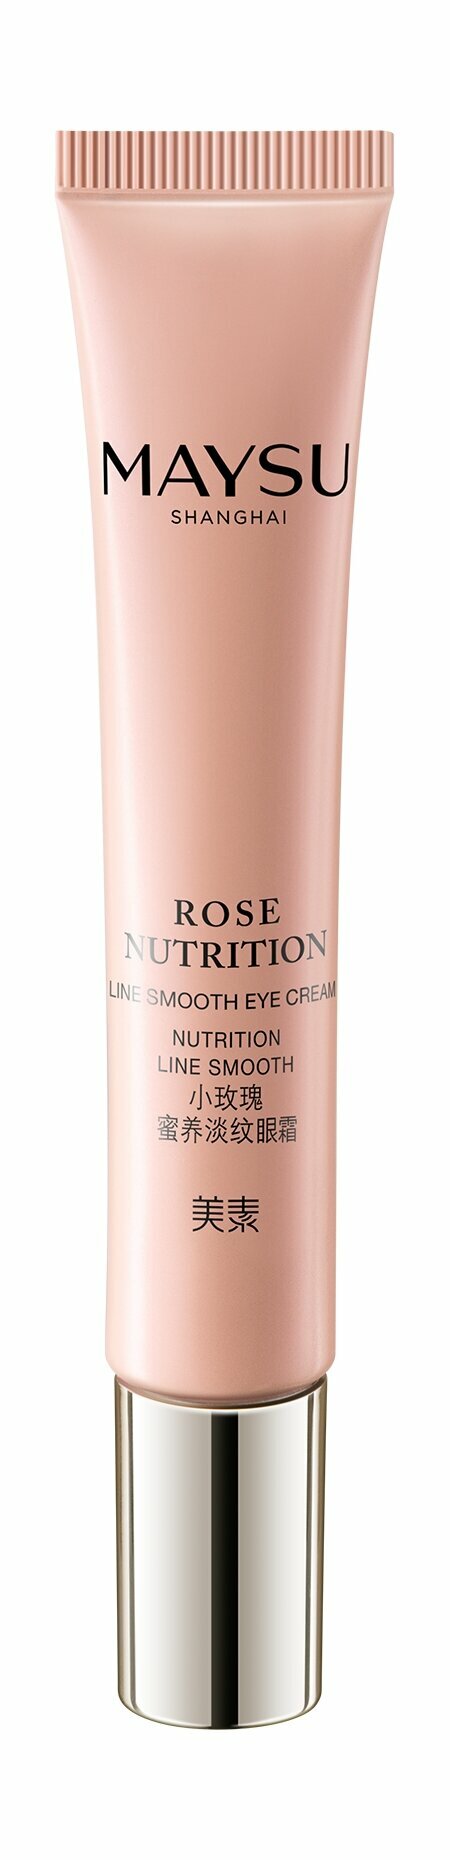 Питающий крем для области вокруг глаз с экстрактом розы Maysu Shanghai Rose Nutrition Line Smooth Eye Cream /18 мл/гр.